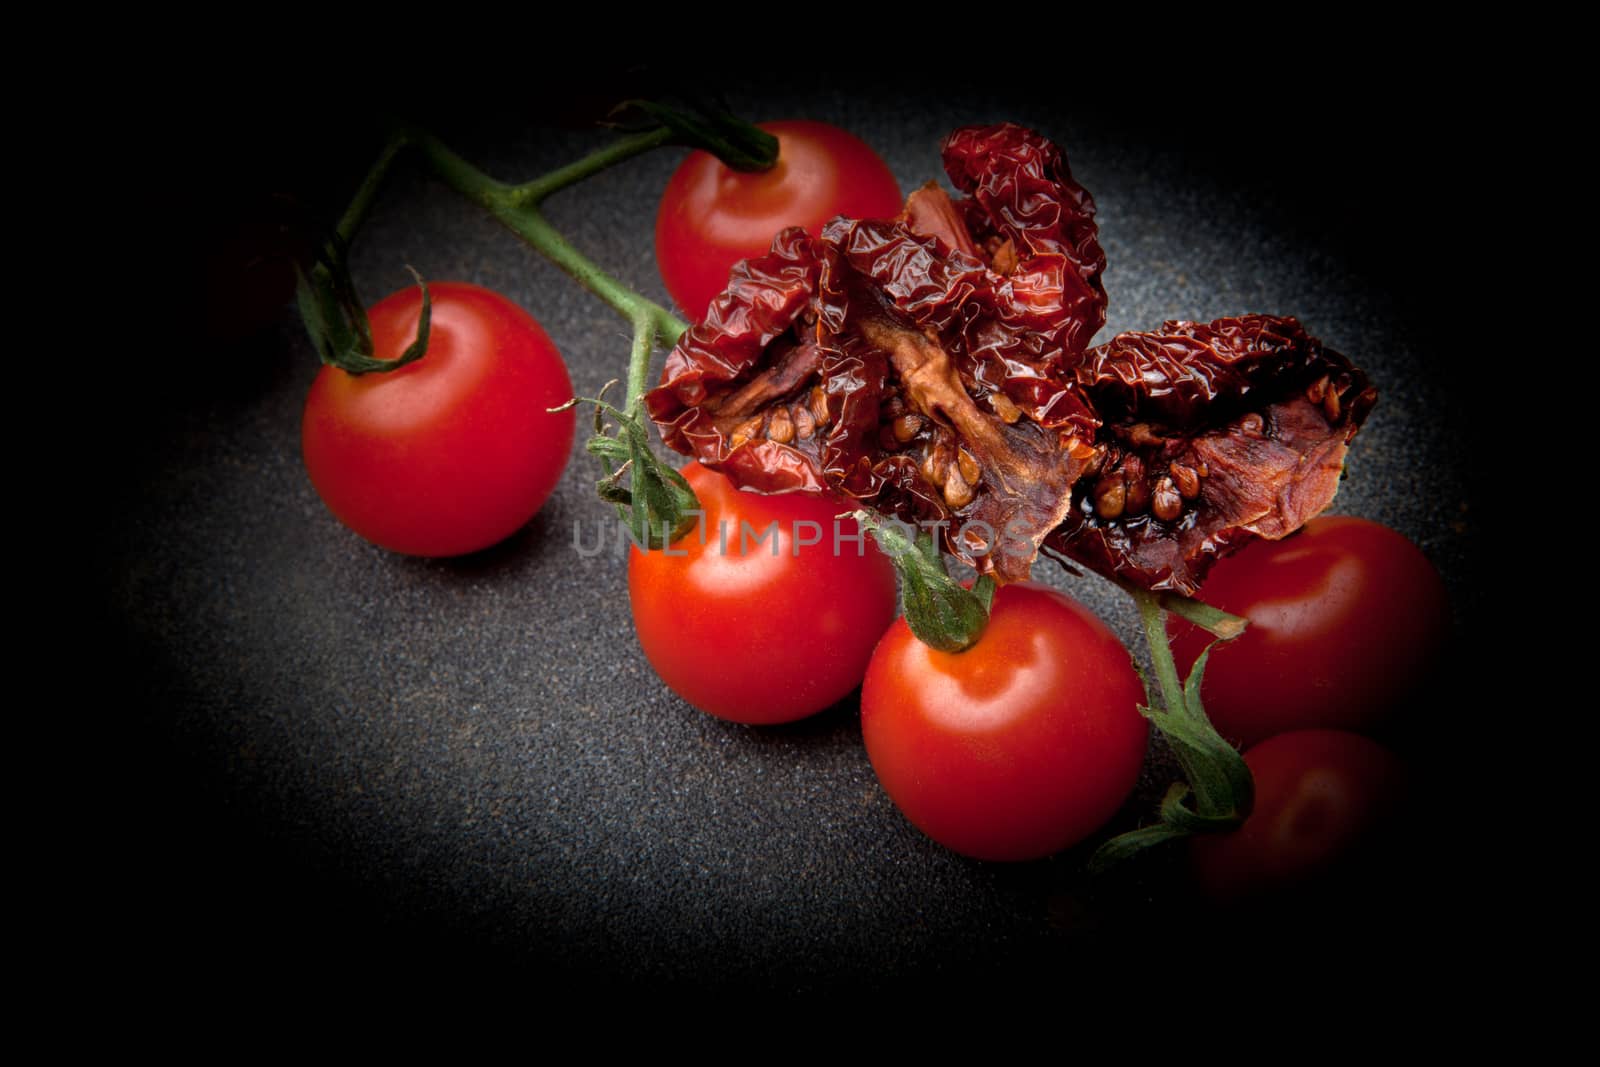 Dried Tomato studio quality black background by Jonicartoon